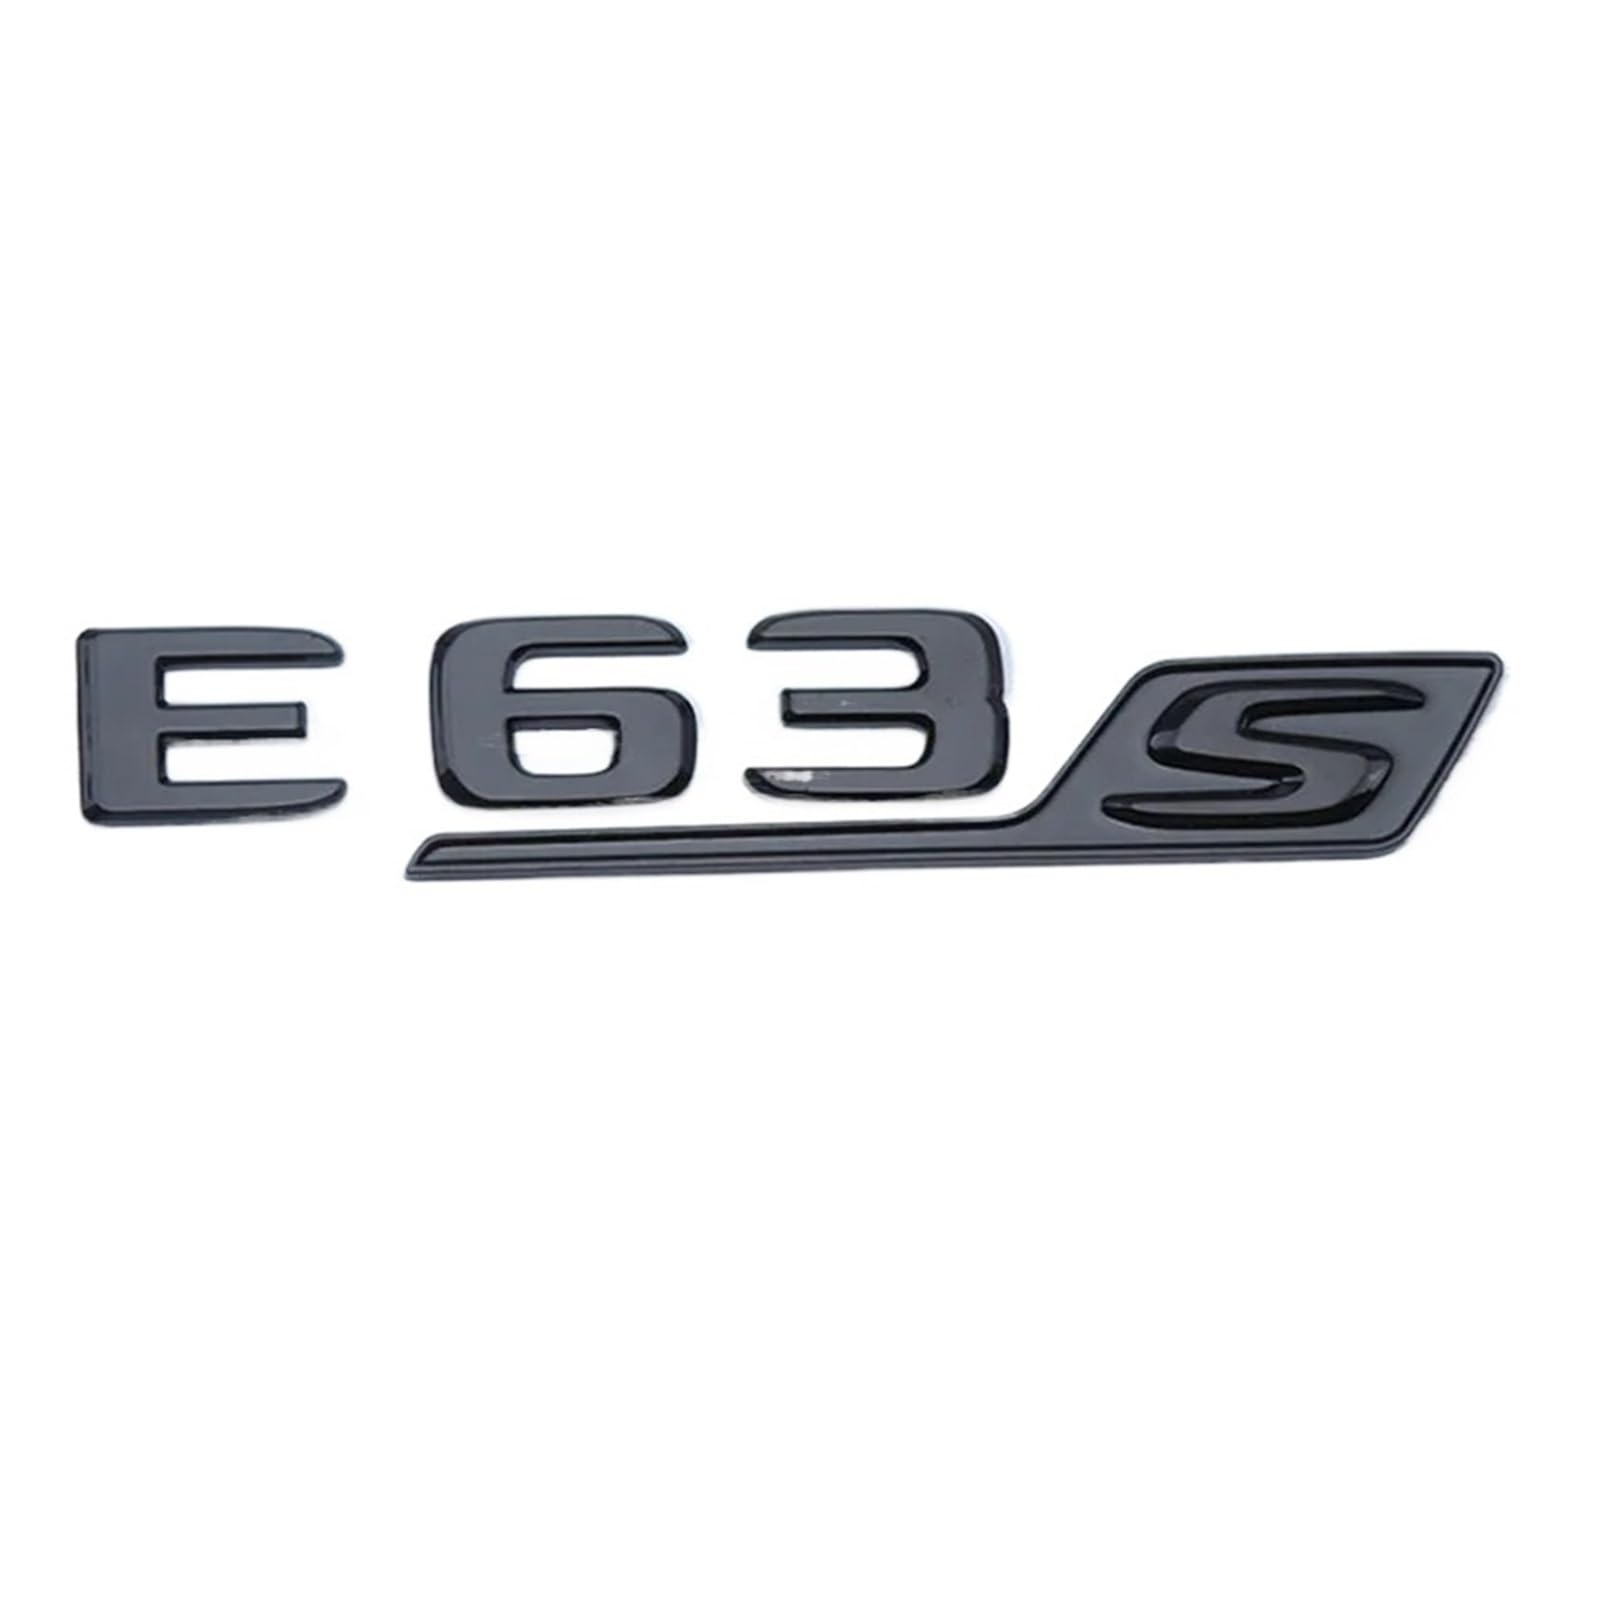 ALMVIS 3D ABS Auto Hinten Stamm Aufkleber Emblem Logo GLE63S Abzeichen Fit for Mercedes AMG CE GLC GLE 63 S W205 w204 W213 W212 X253 W167 W166 C292 Auto-Logo-Aufkleber(E63 Black) von ALMVIS